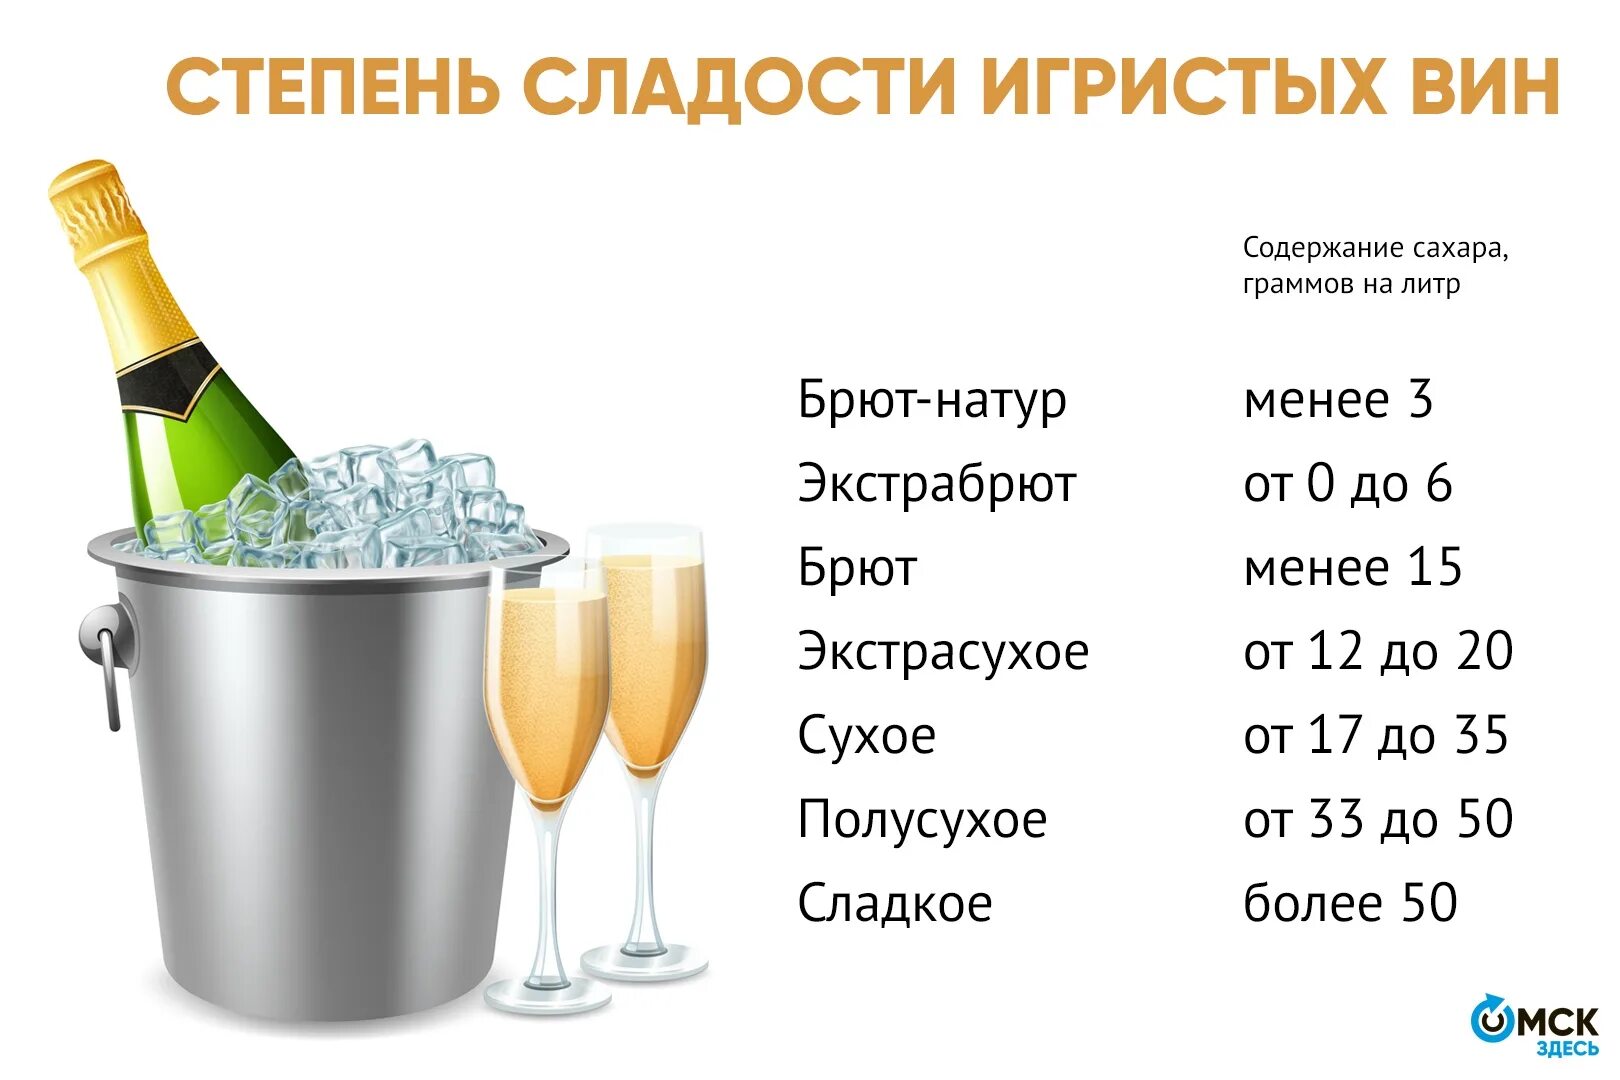 Сколько грамм сахара можно употреблять. Классификация игристых вин. Названия шампанских и игристых вин. Градация игристых вин. Классификация игристого вина.